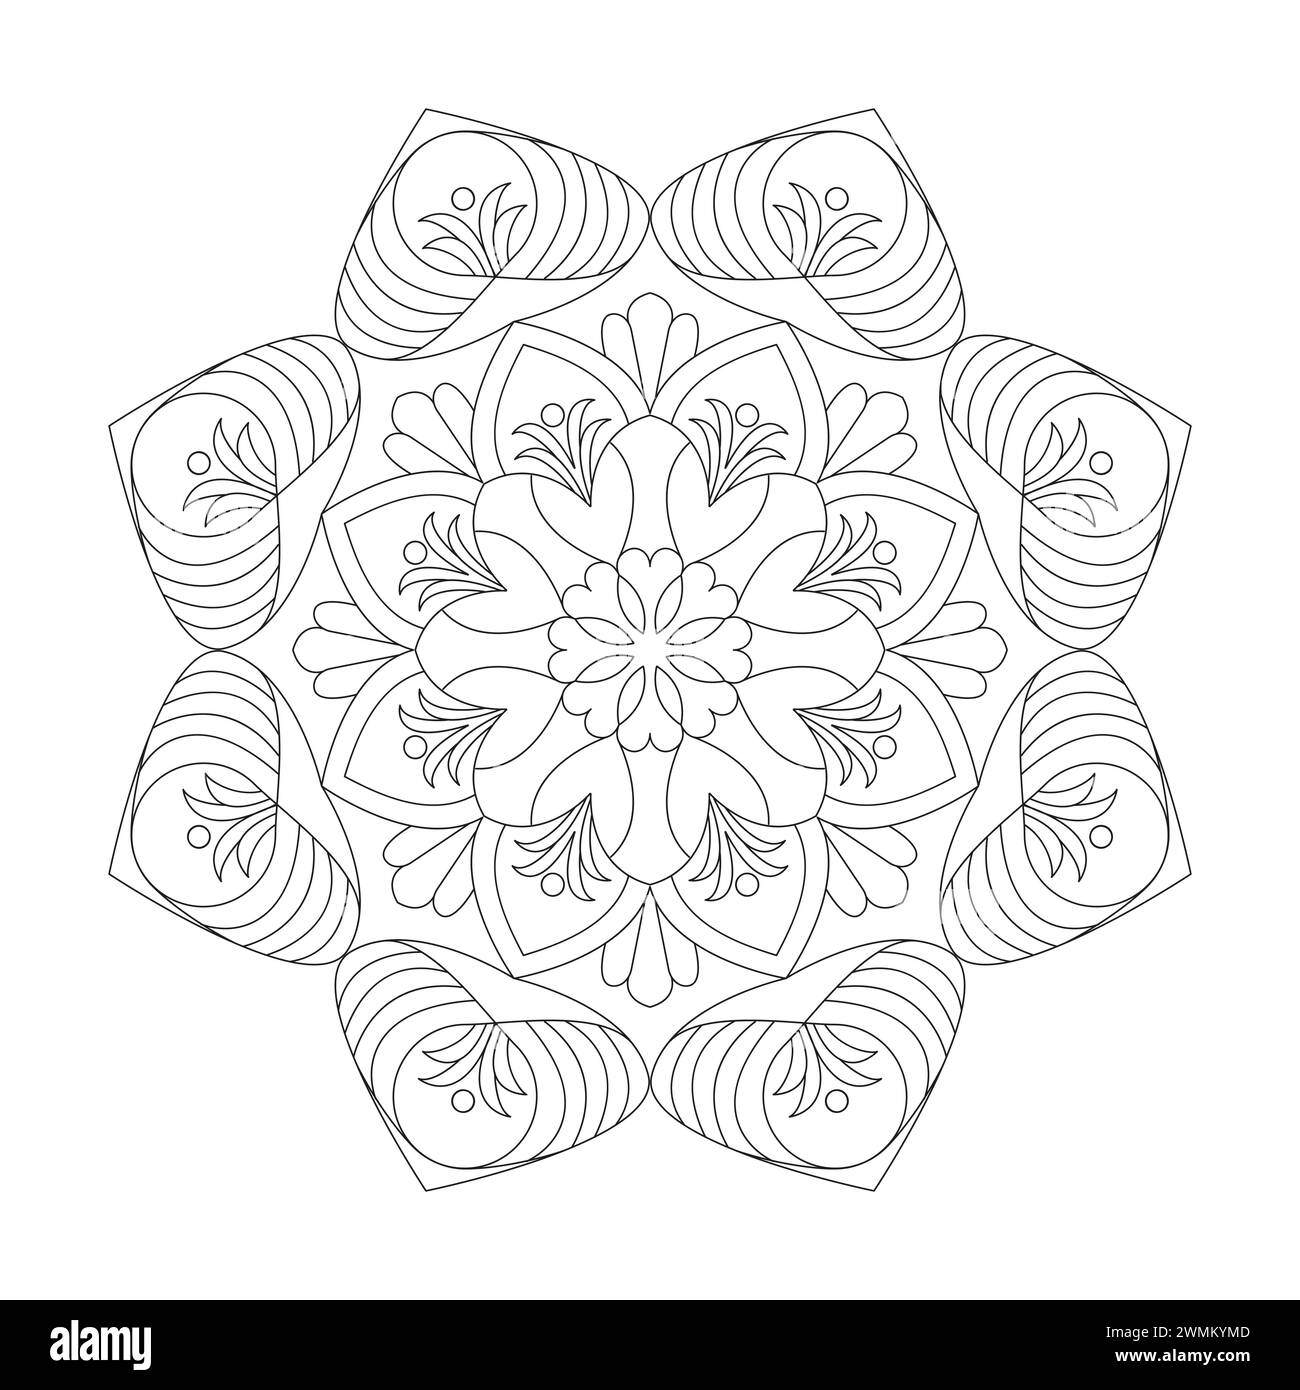 Cosmic Relaxation Mandala Coloring Book Page per kdp Book Interior. Petali tranquilli, capacità di rilassarsi, esperienze cerebrali, Harmonous Haven, Peaceful P Illustrazione Vettoriale